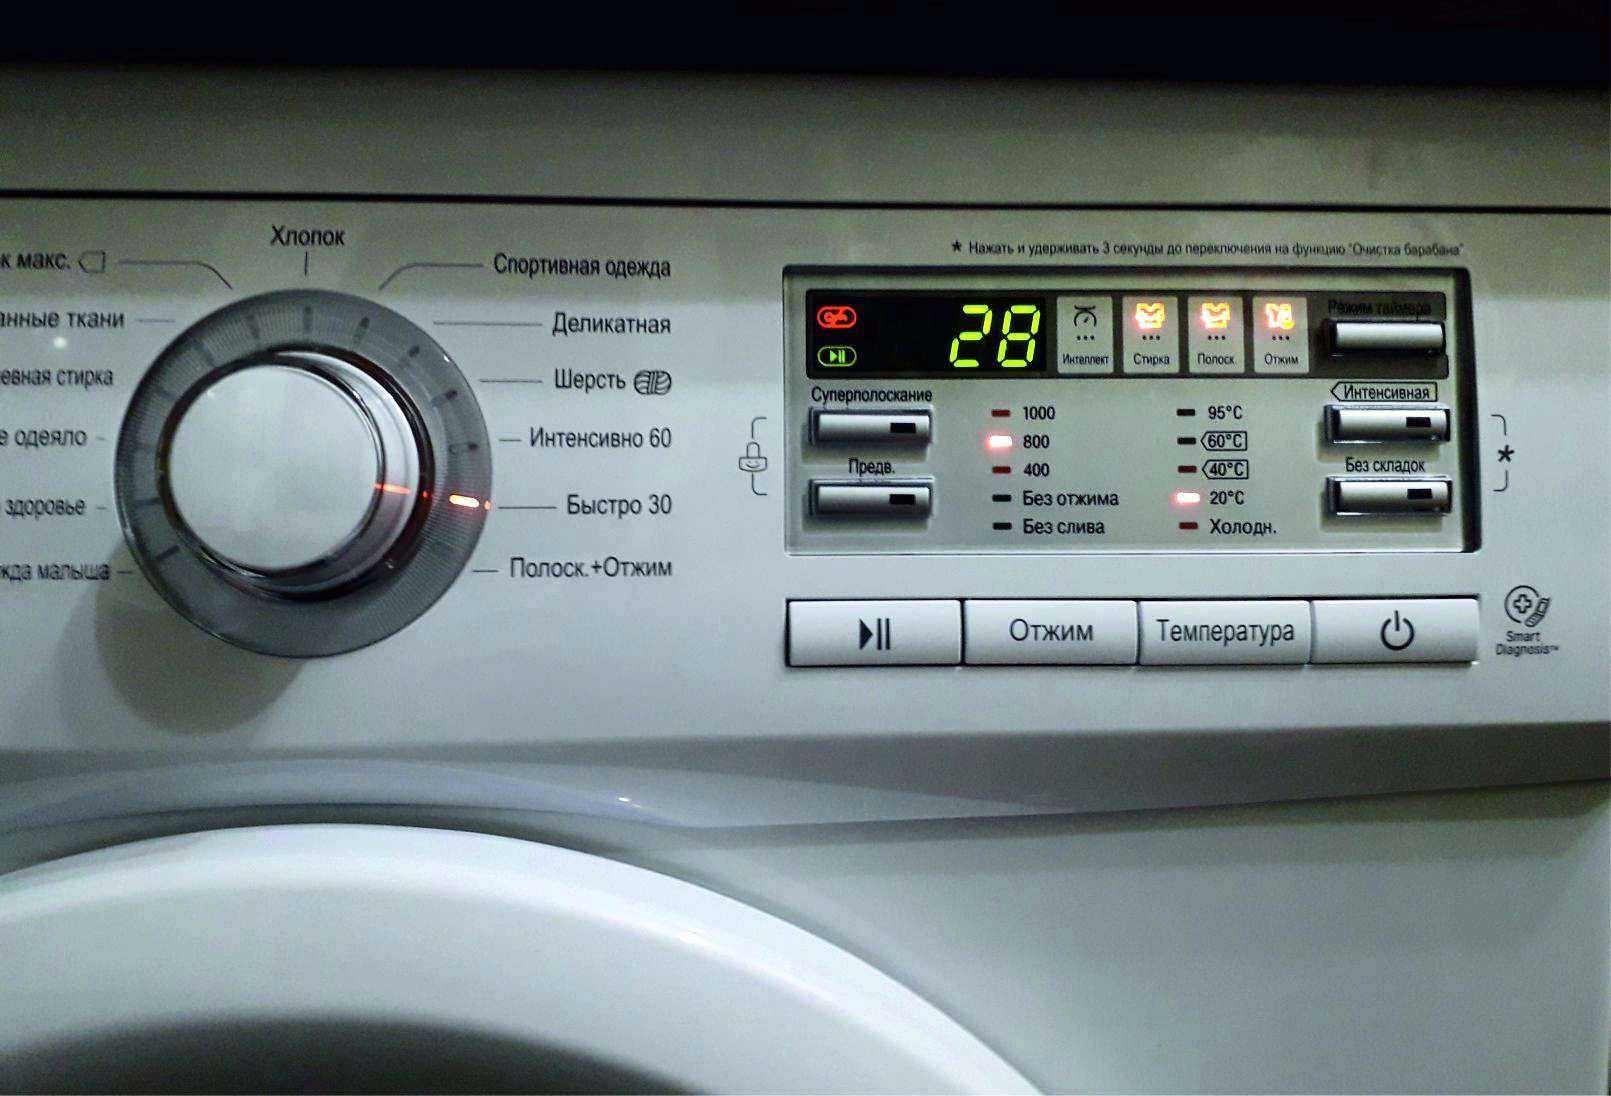 Серийный номер стиральной машины lg как найти, значение, объяснение | tab-tv